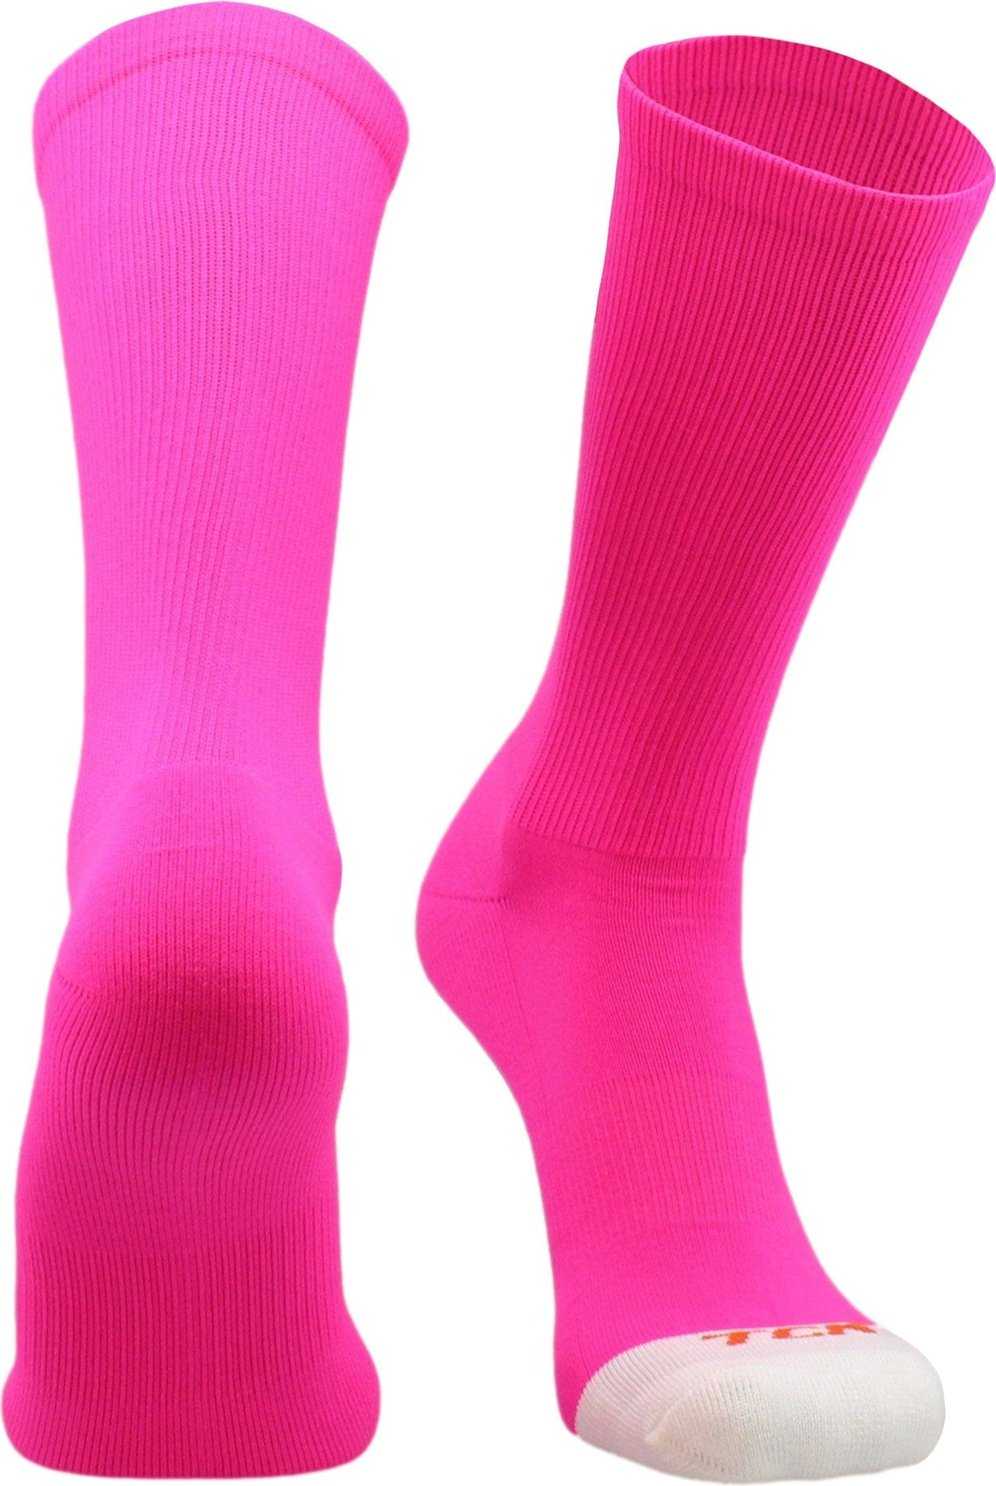 TCK Prosport Mid Crew Socks - Hot Pink - HIT a Double